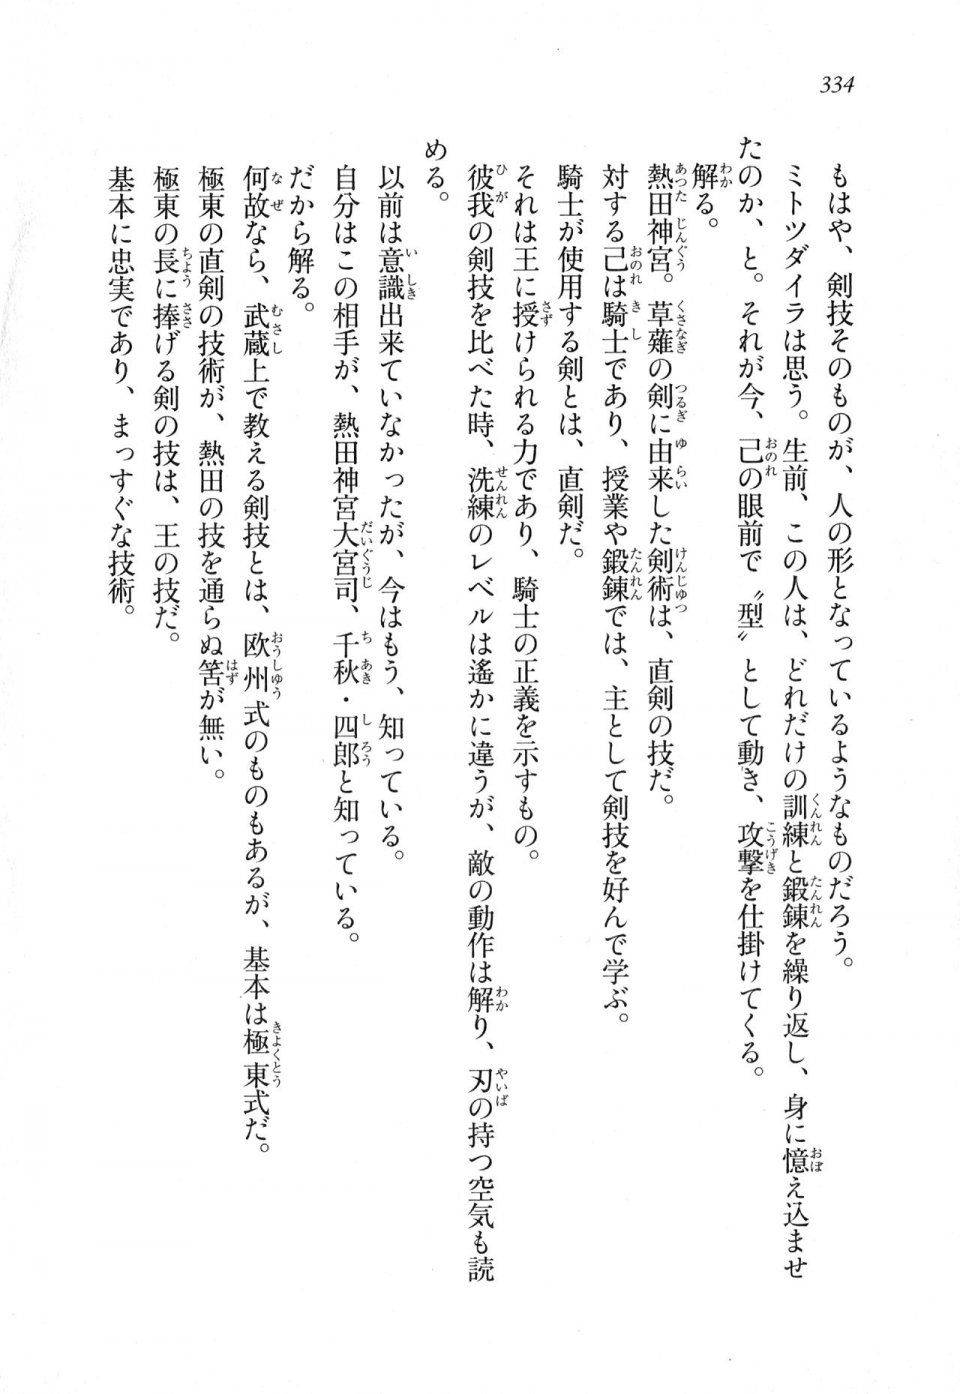 Kyoukai Senjou no Horizon LN Sidestory Vol 1 - Photo #332